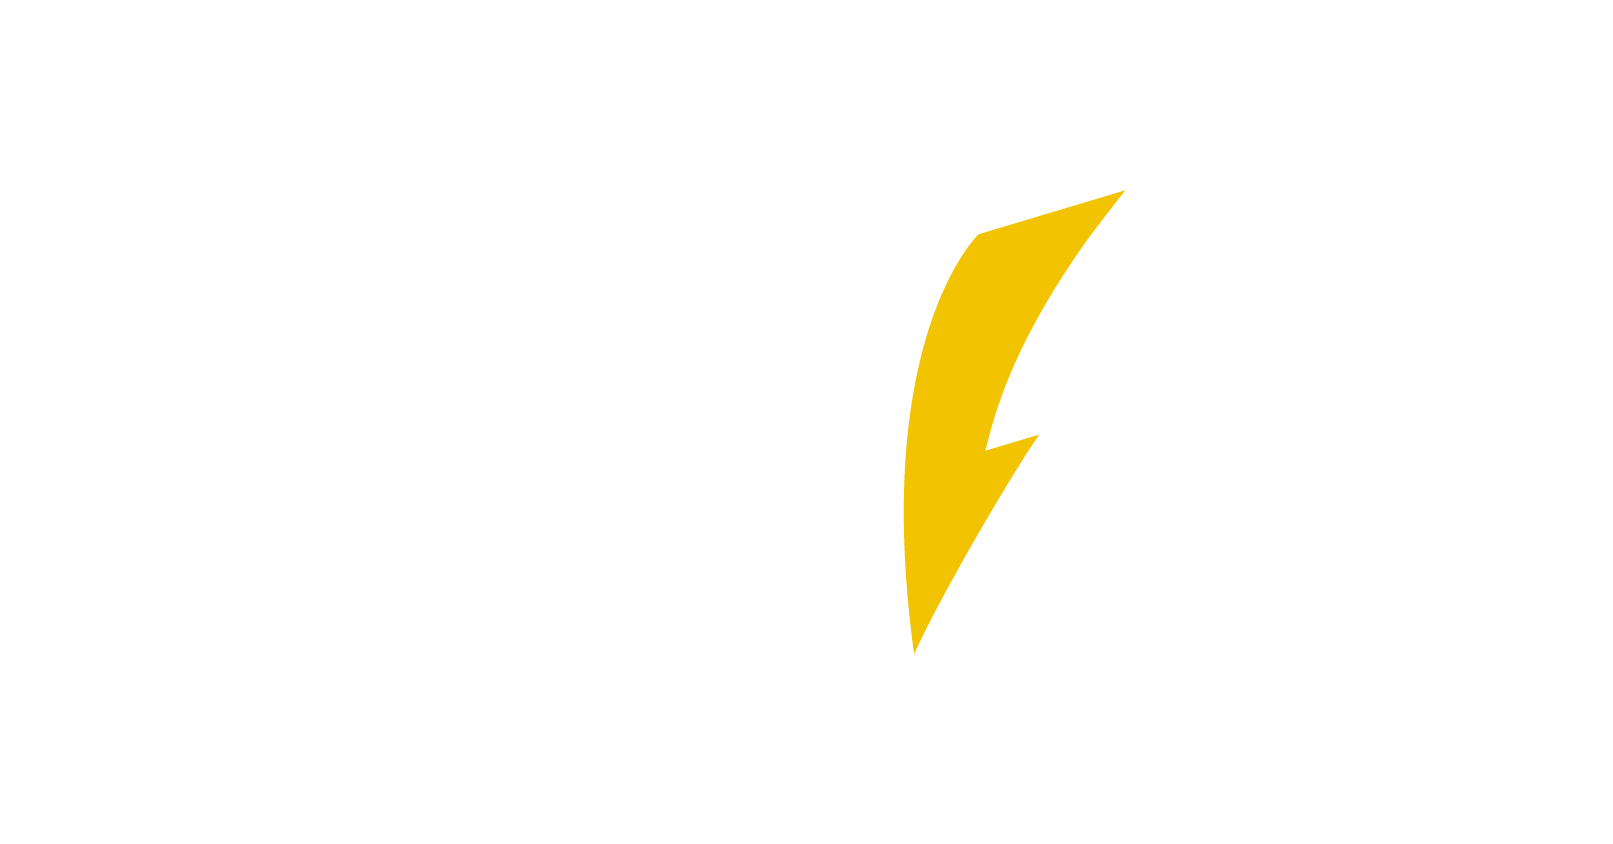 bnzsa-logo-white